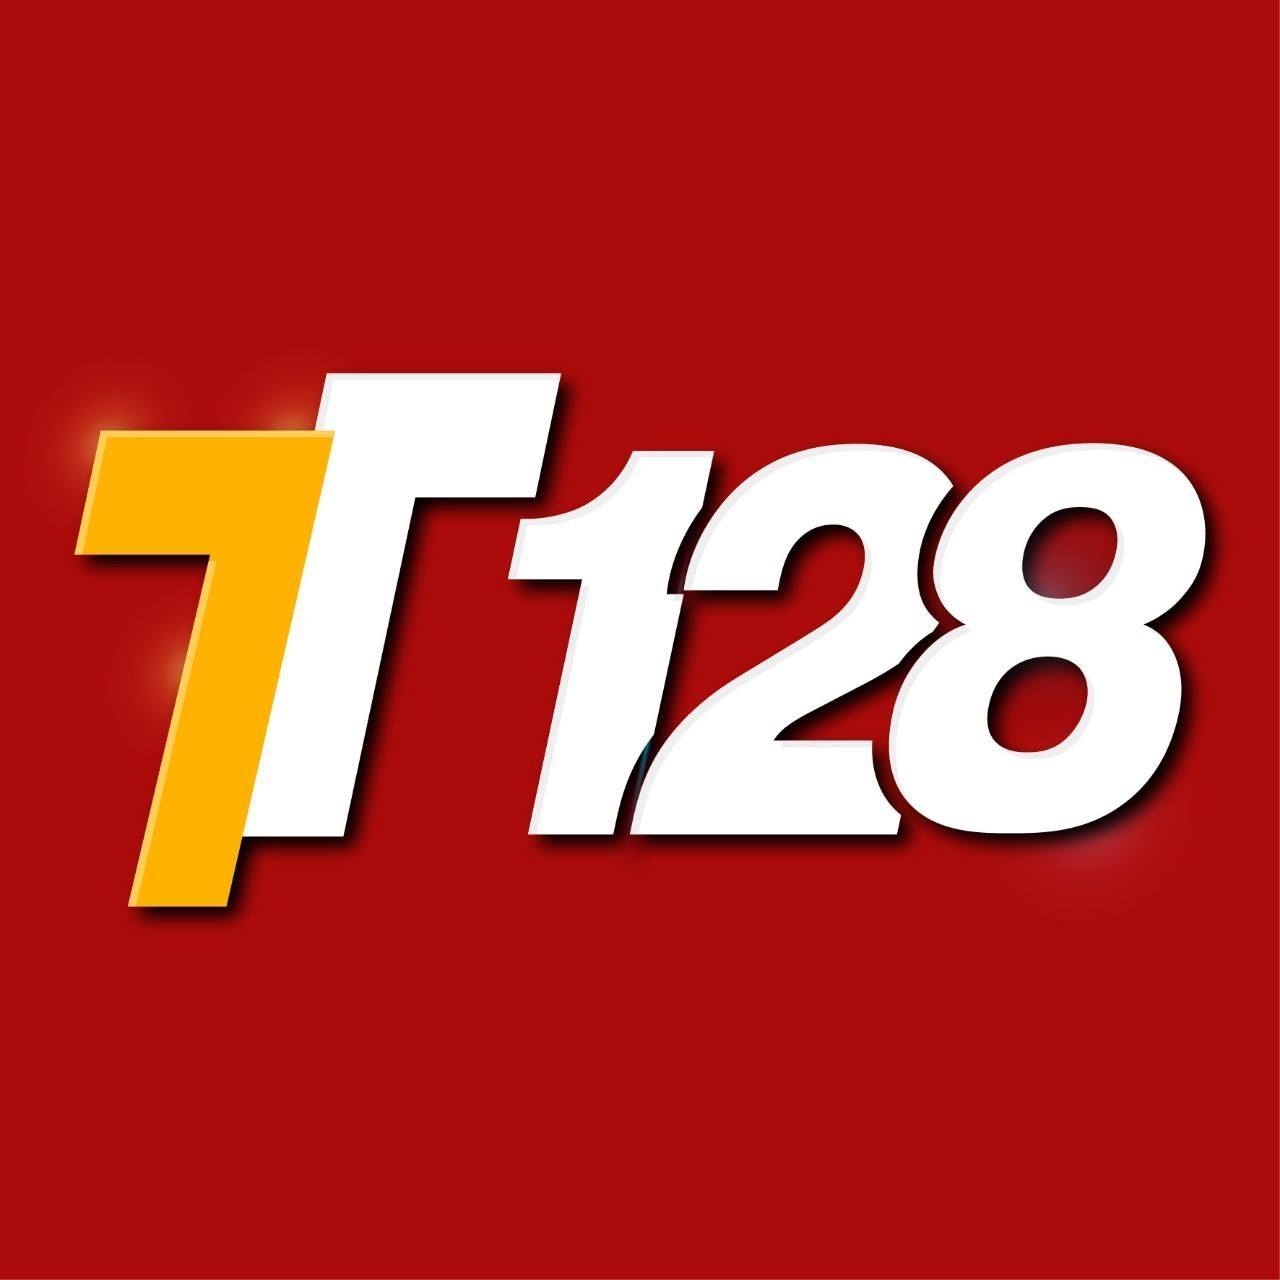 TT128 - Nhà cái uy tín bậc nhất Châu Á.